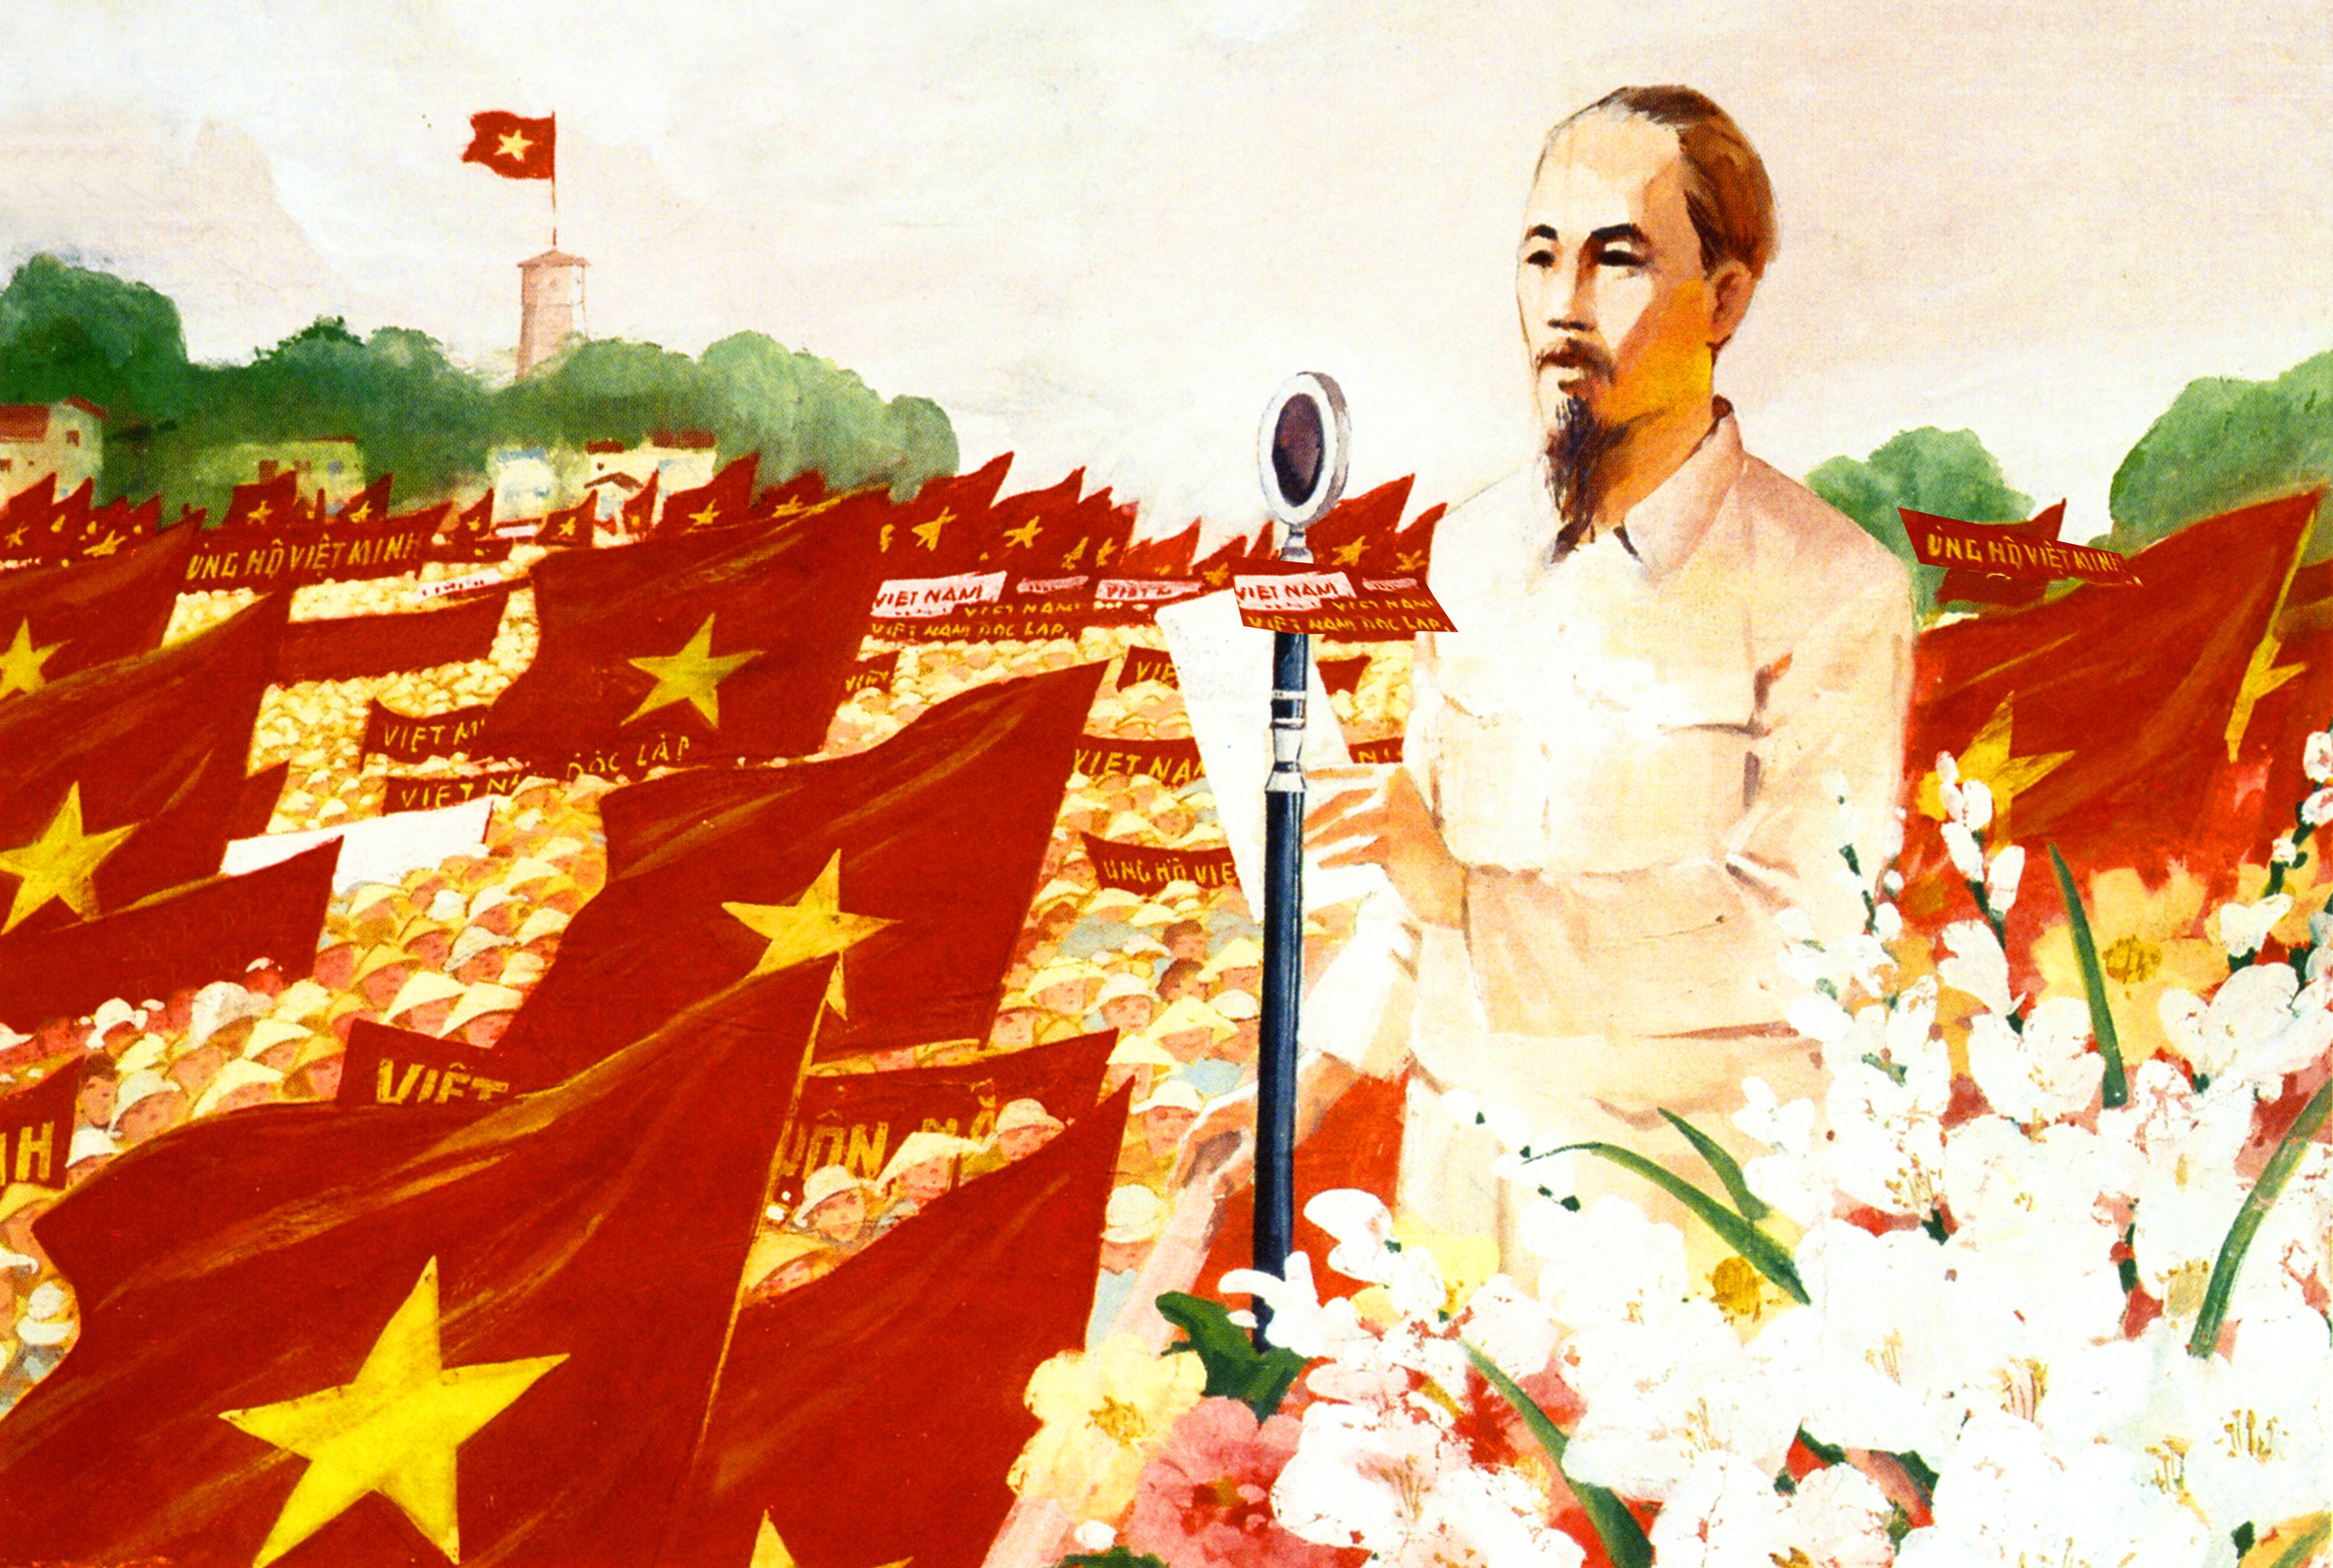 Cách mạng tháng Tám: Tháng Tám luôn là một trong những biểu tượng quan trọng của nước ta. Năm 2024, khi nhận được hình ảnh của cách mạng tháng Tám, hãy nghĩ đến những anh hùng đã hy sinh trong sự nghiệp đấu tranh cho độc lập, tự do của dân tộc. Điều đó sẽ giúp chúng ta hiểu rõ và đáng giá hơn những giá trị vô giá của nước Việt Nam.